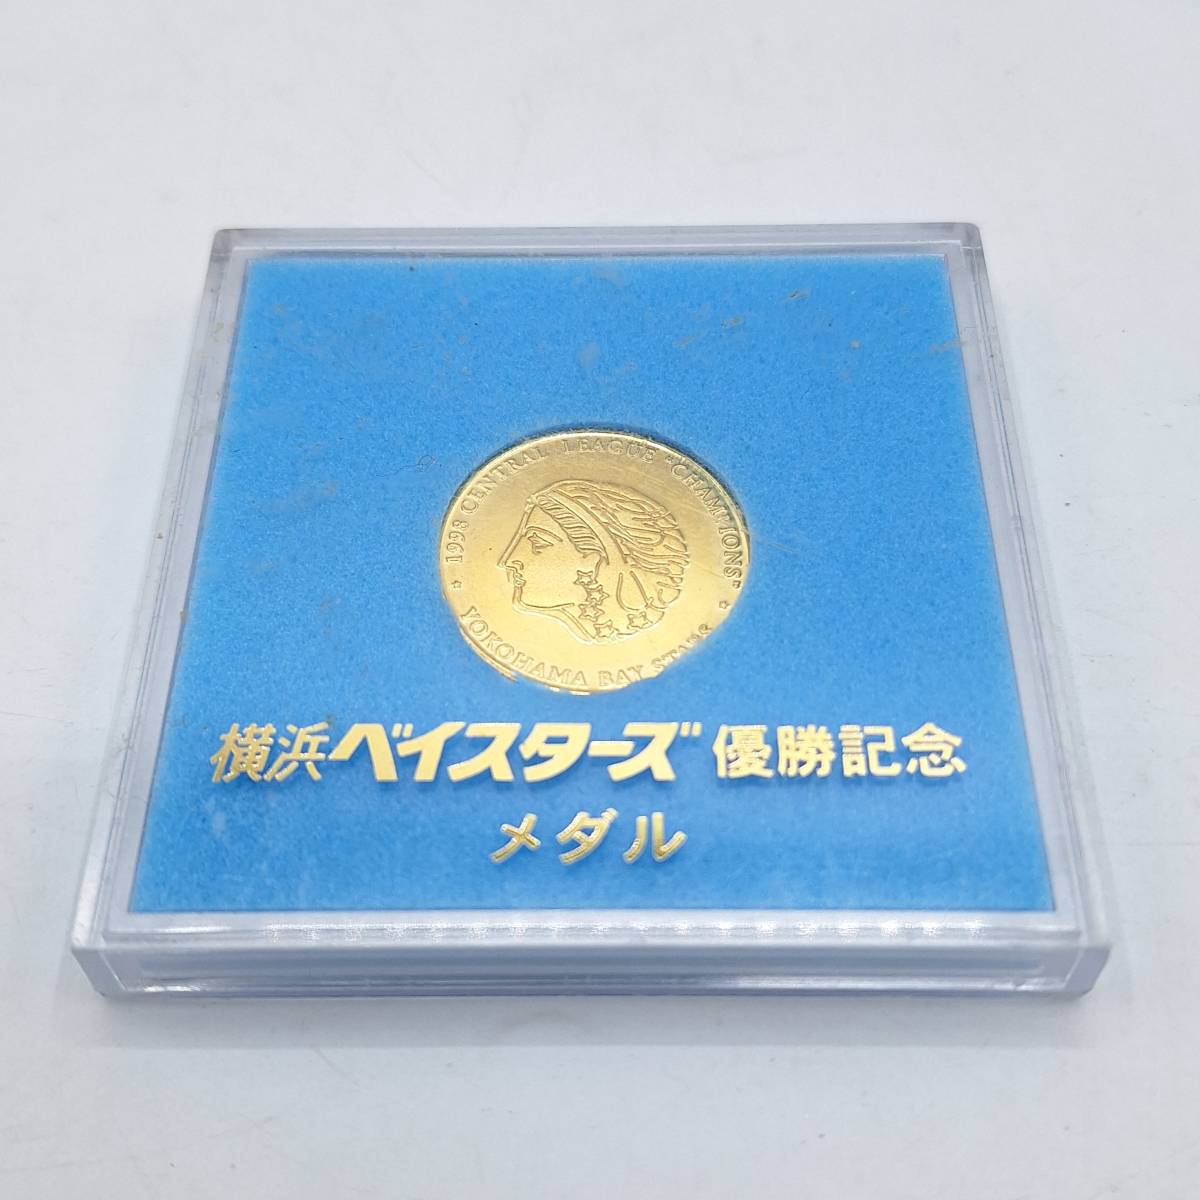 横浜ベイスターズ 優勝記念メダル 記念コイン メダル 1998 YOKOHAMA BayStars コレクション 保管品 【3658】_画像1